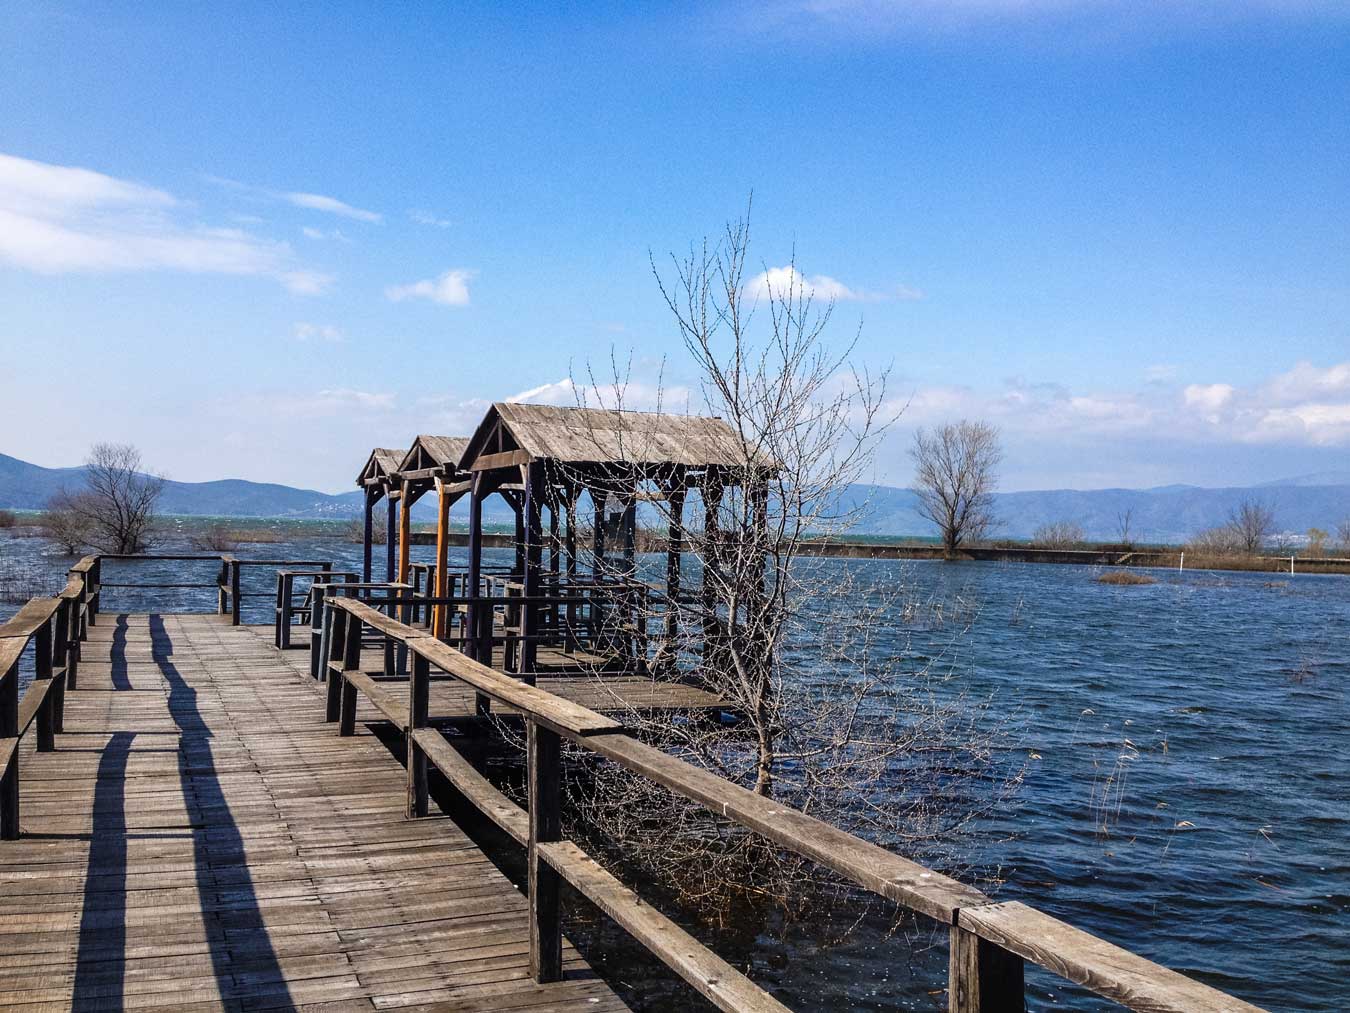 Λίμνη Δοϊράνη: Το ανέγγιχτο διαμάντι της Μακεδονίας